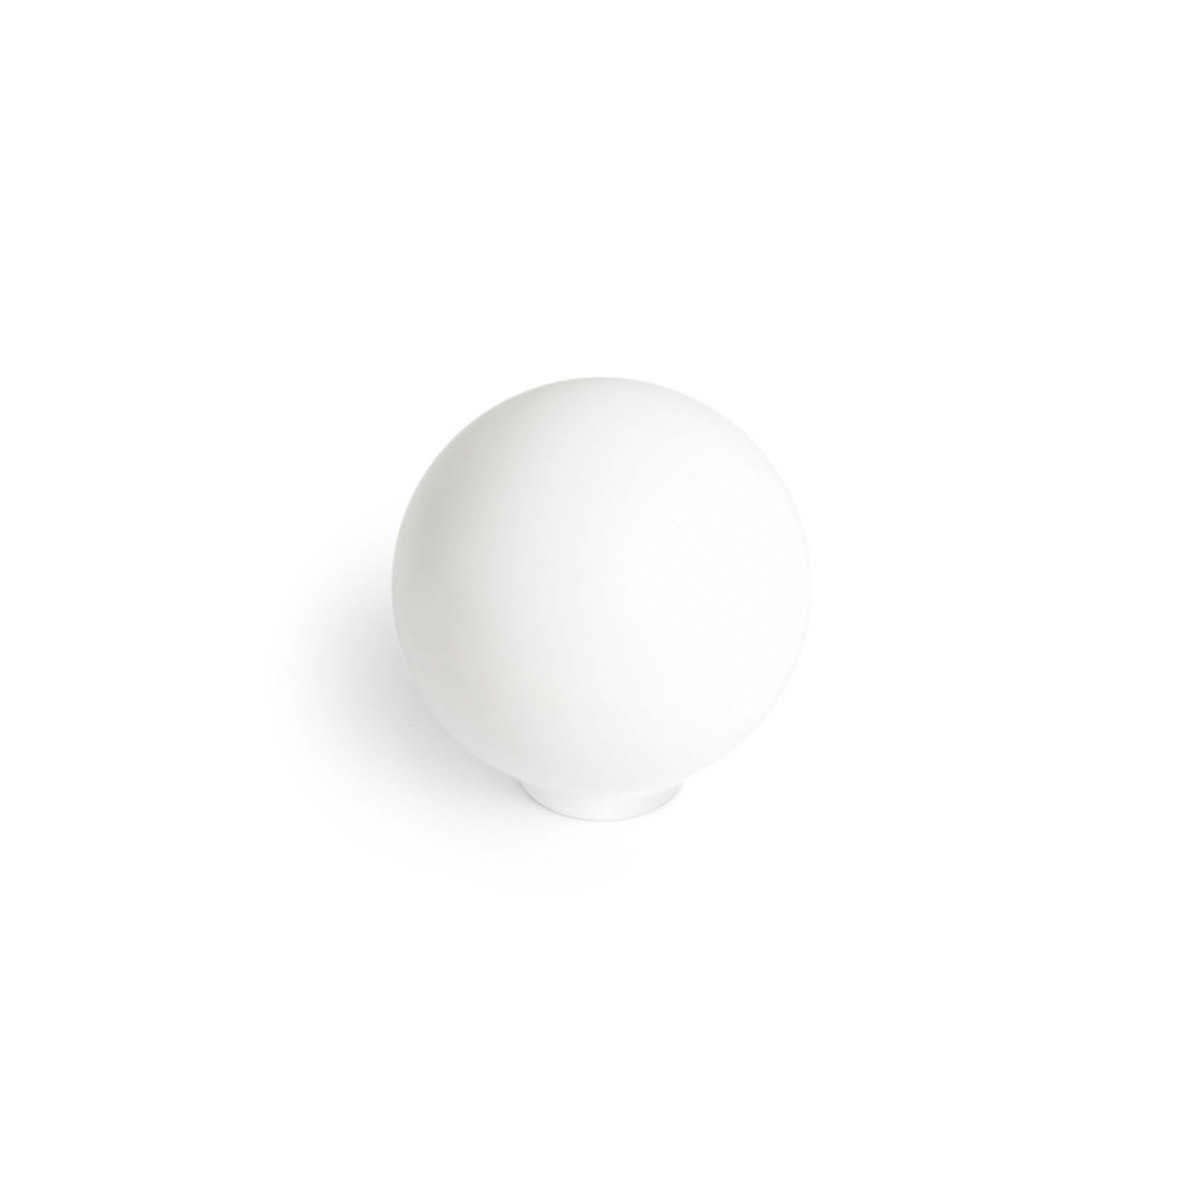 Pomo de plástico con acabado blanco mate, dimensiones: 28x28x29mm Ø: 28mm